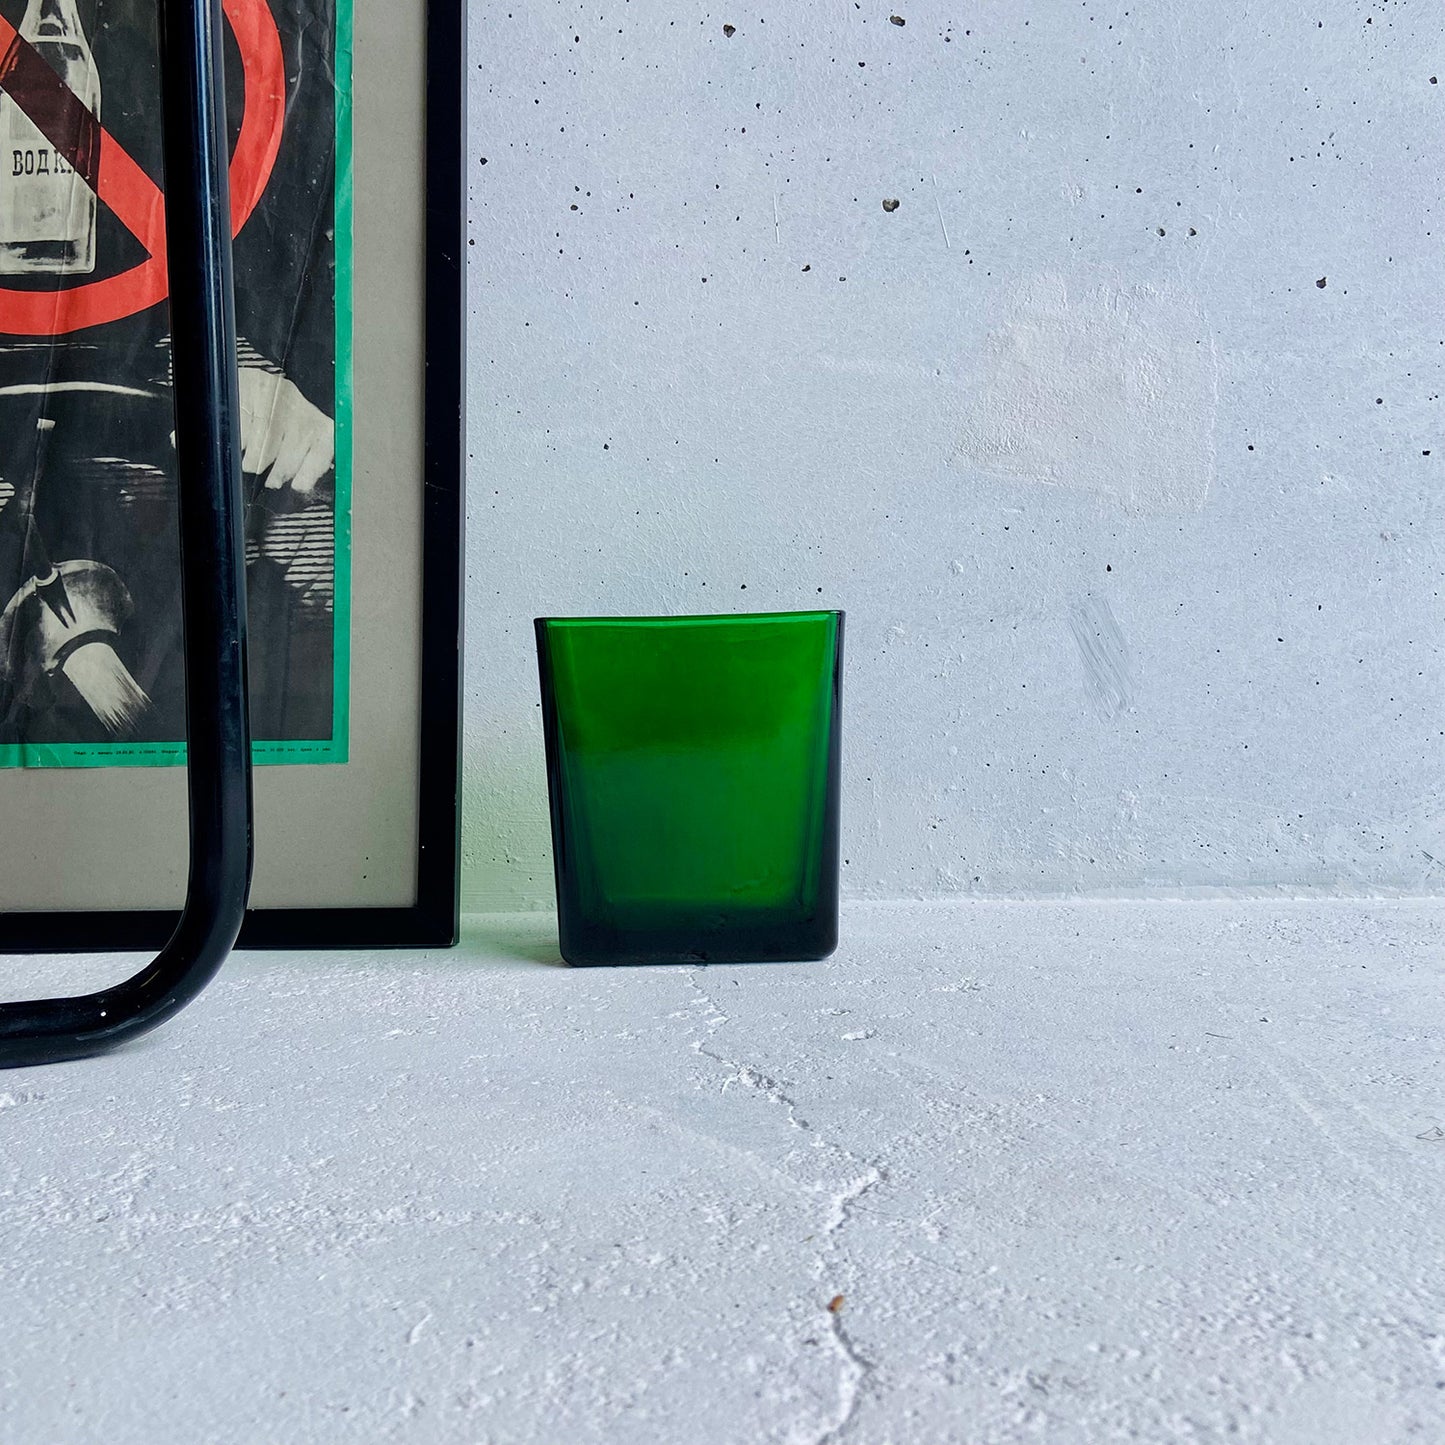 NAPCO, 1166, emerald green glass planter / vase, USA, 1960s